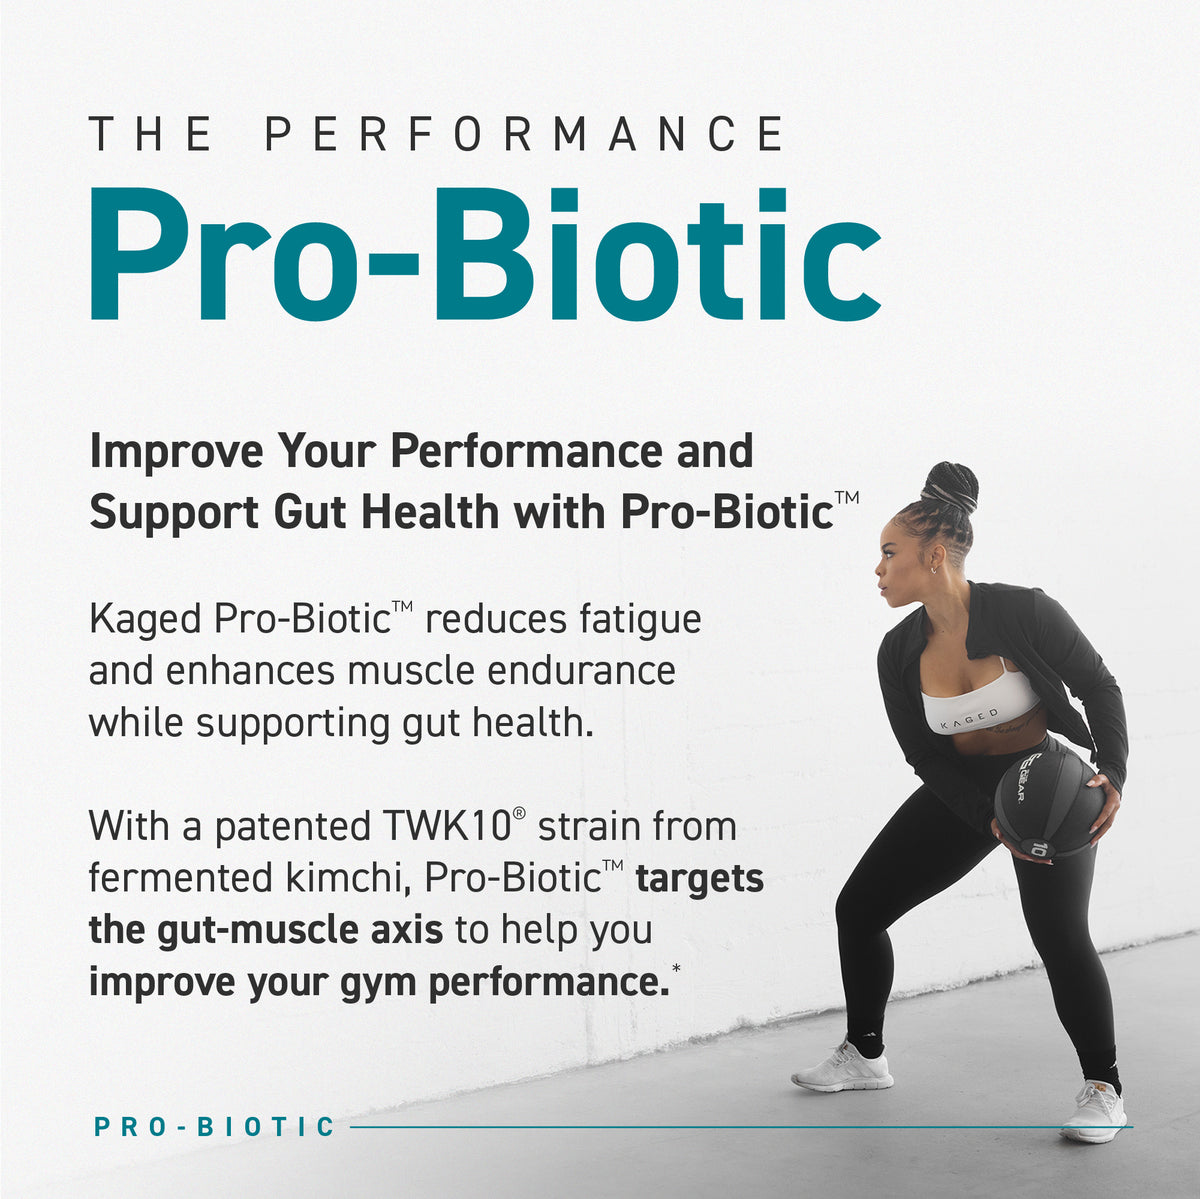 Pro-Biotic